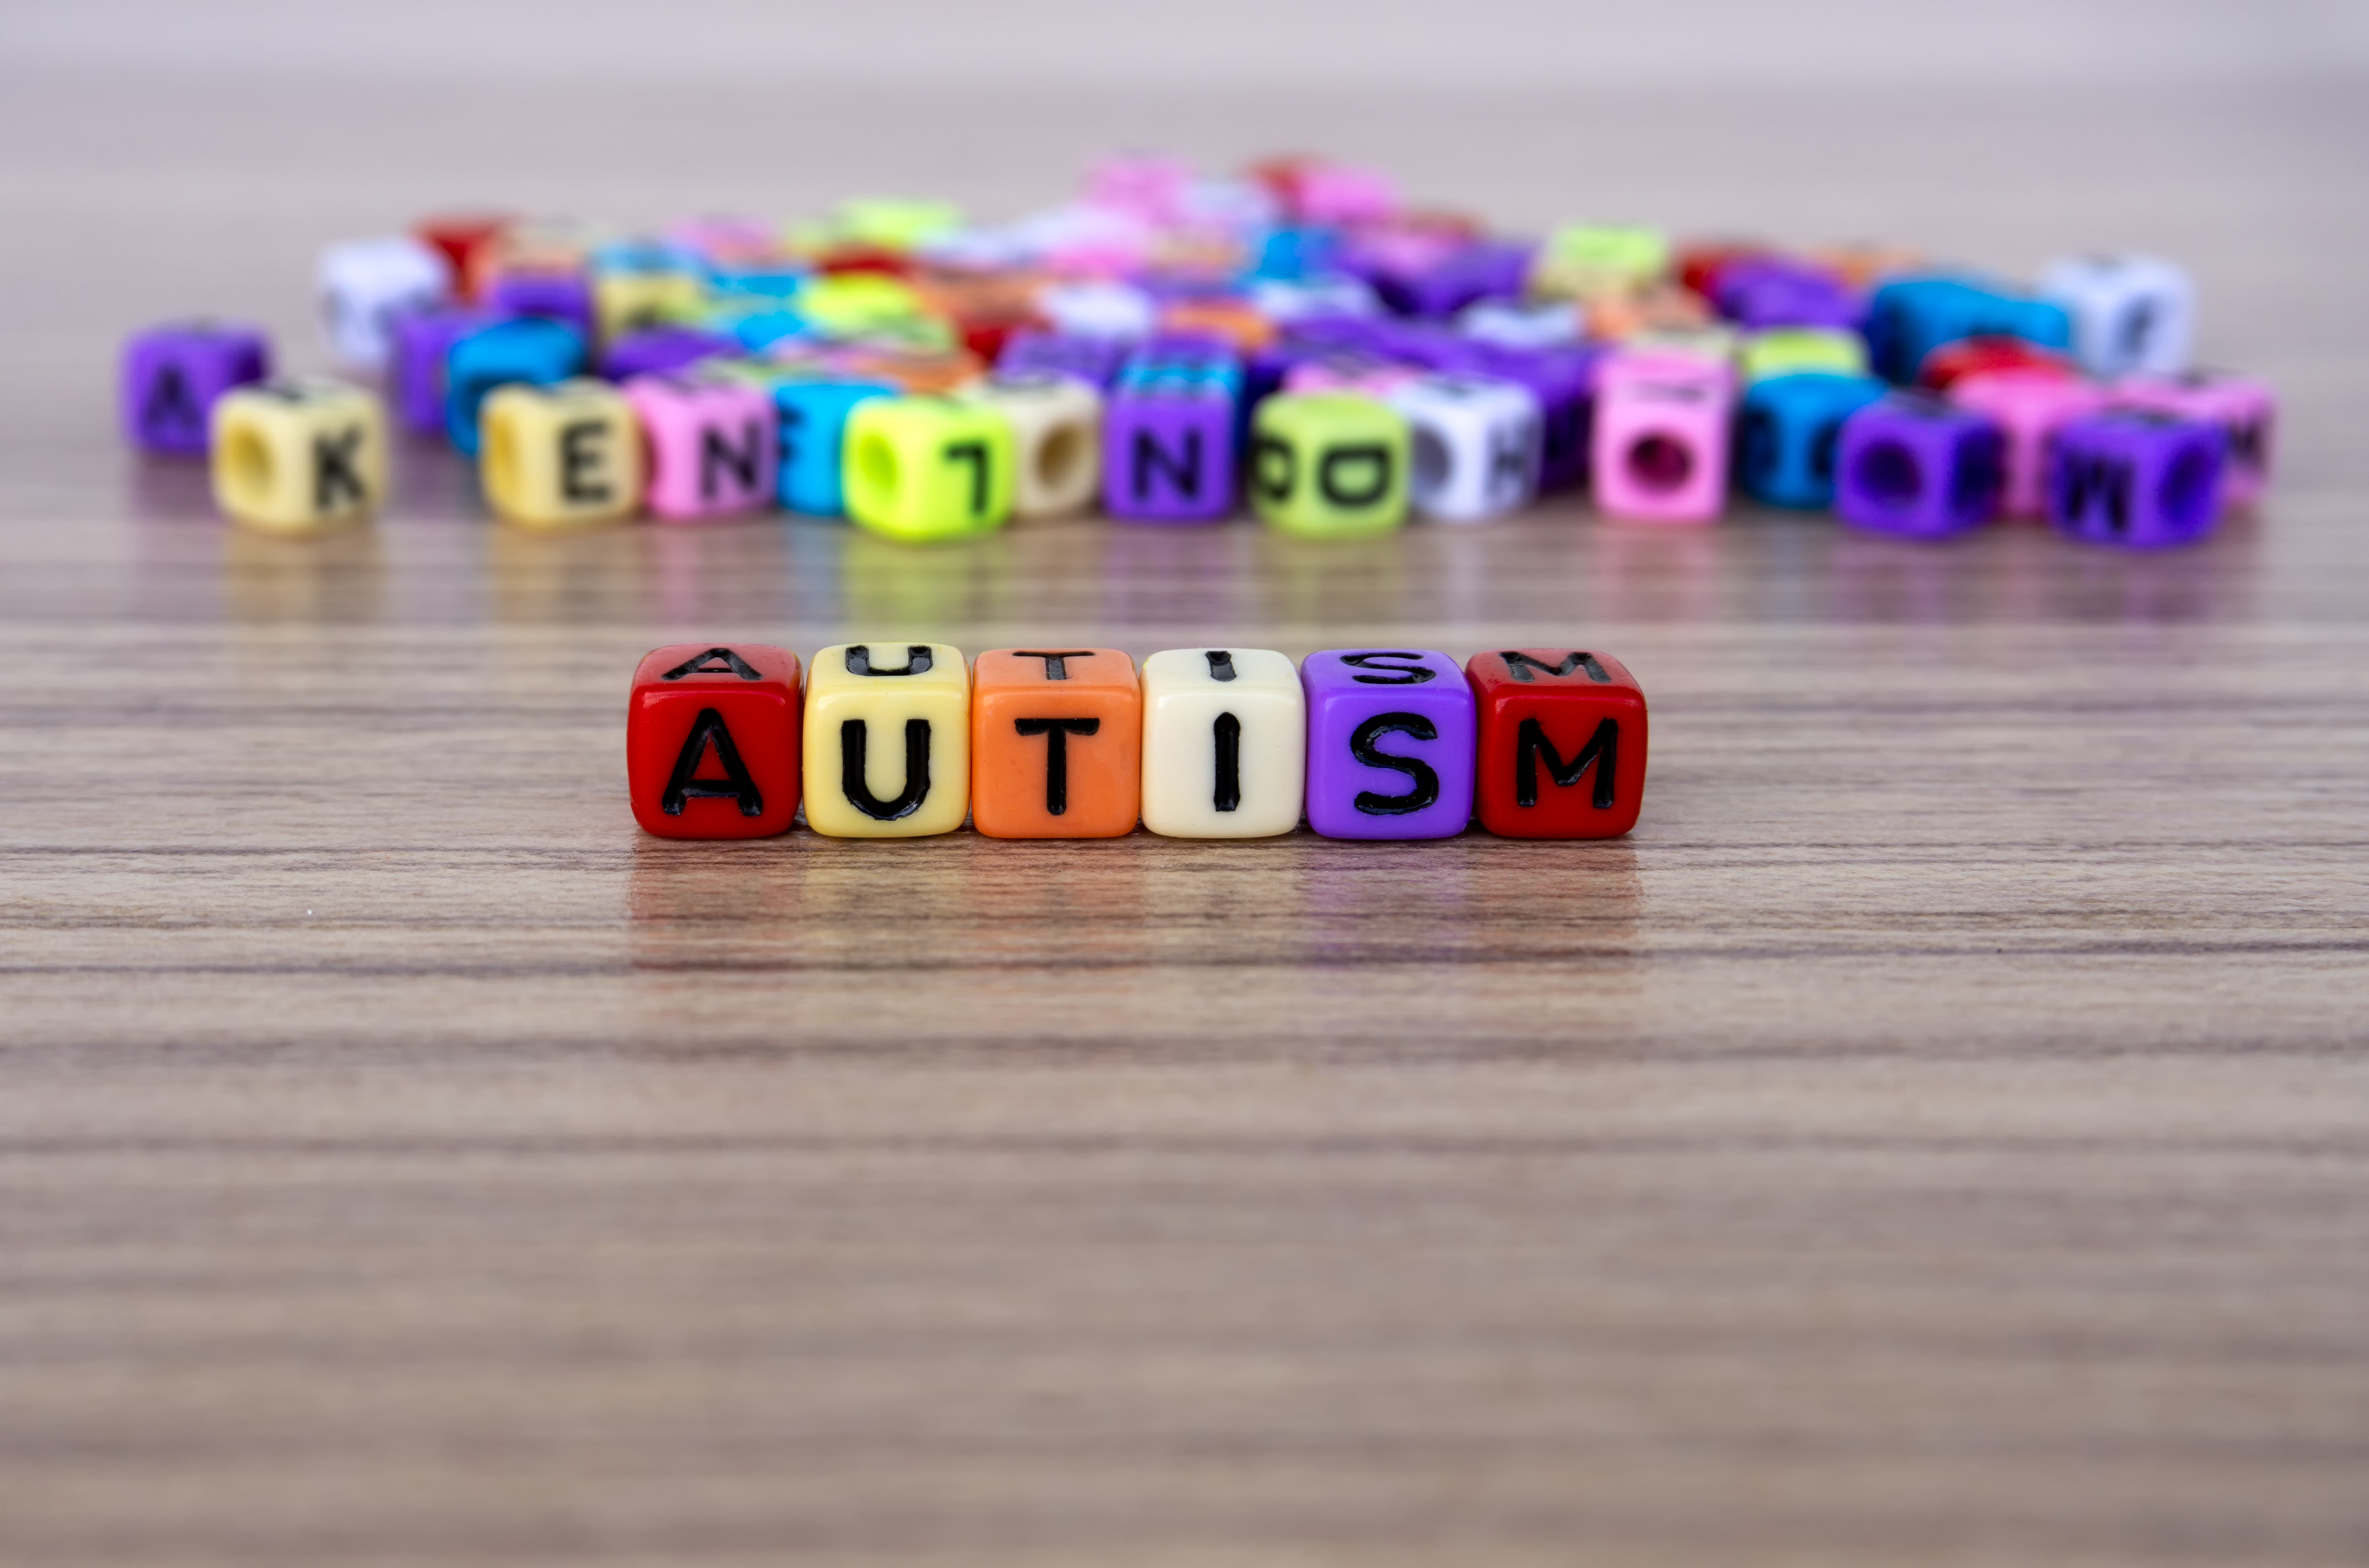 Los cambios cerebrales en el autismo son integrales en toda la corteza cerebral, según hallaron los investigadores (Getty) 